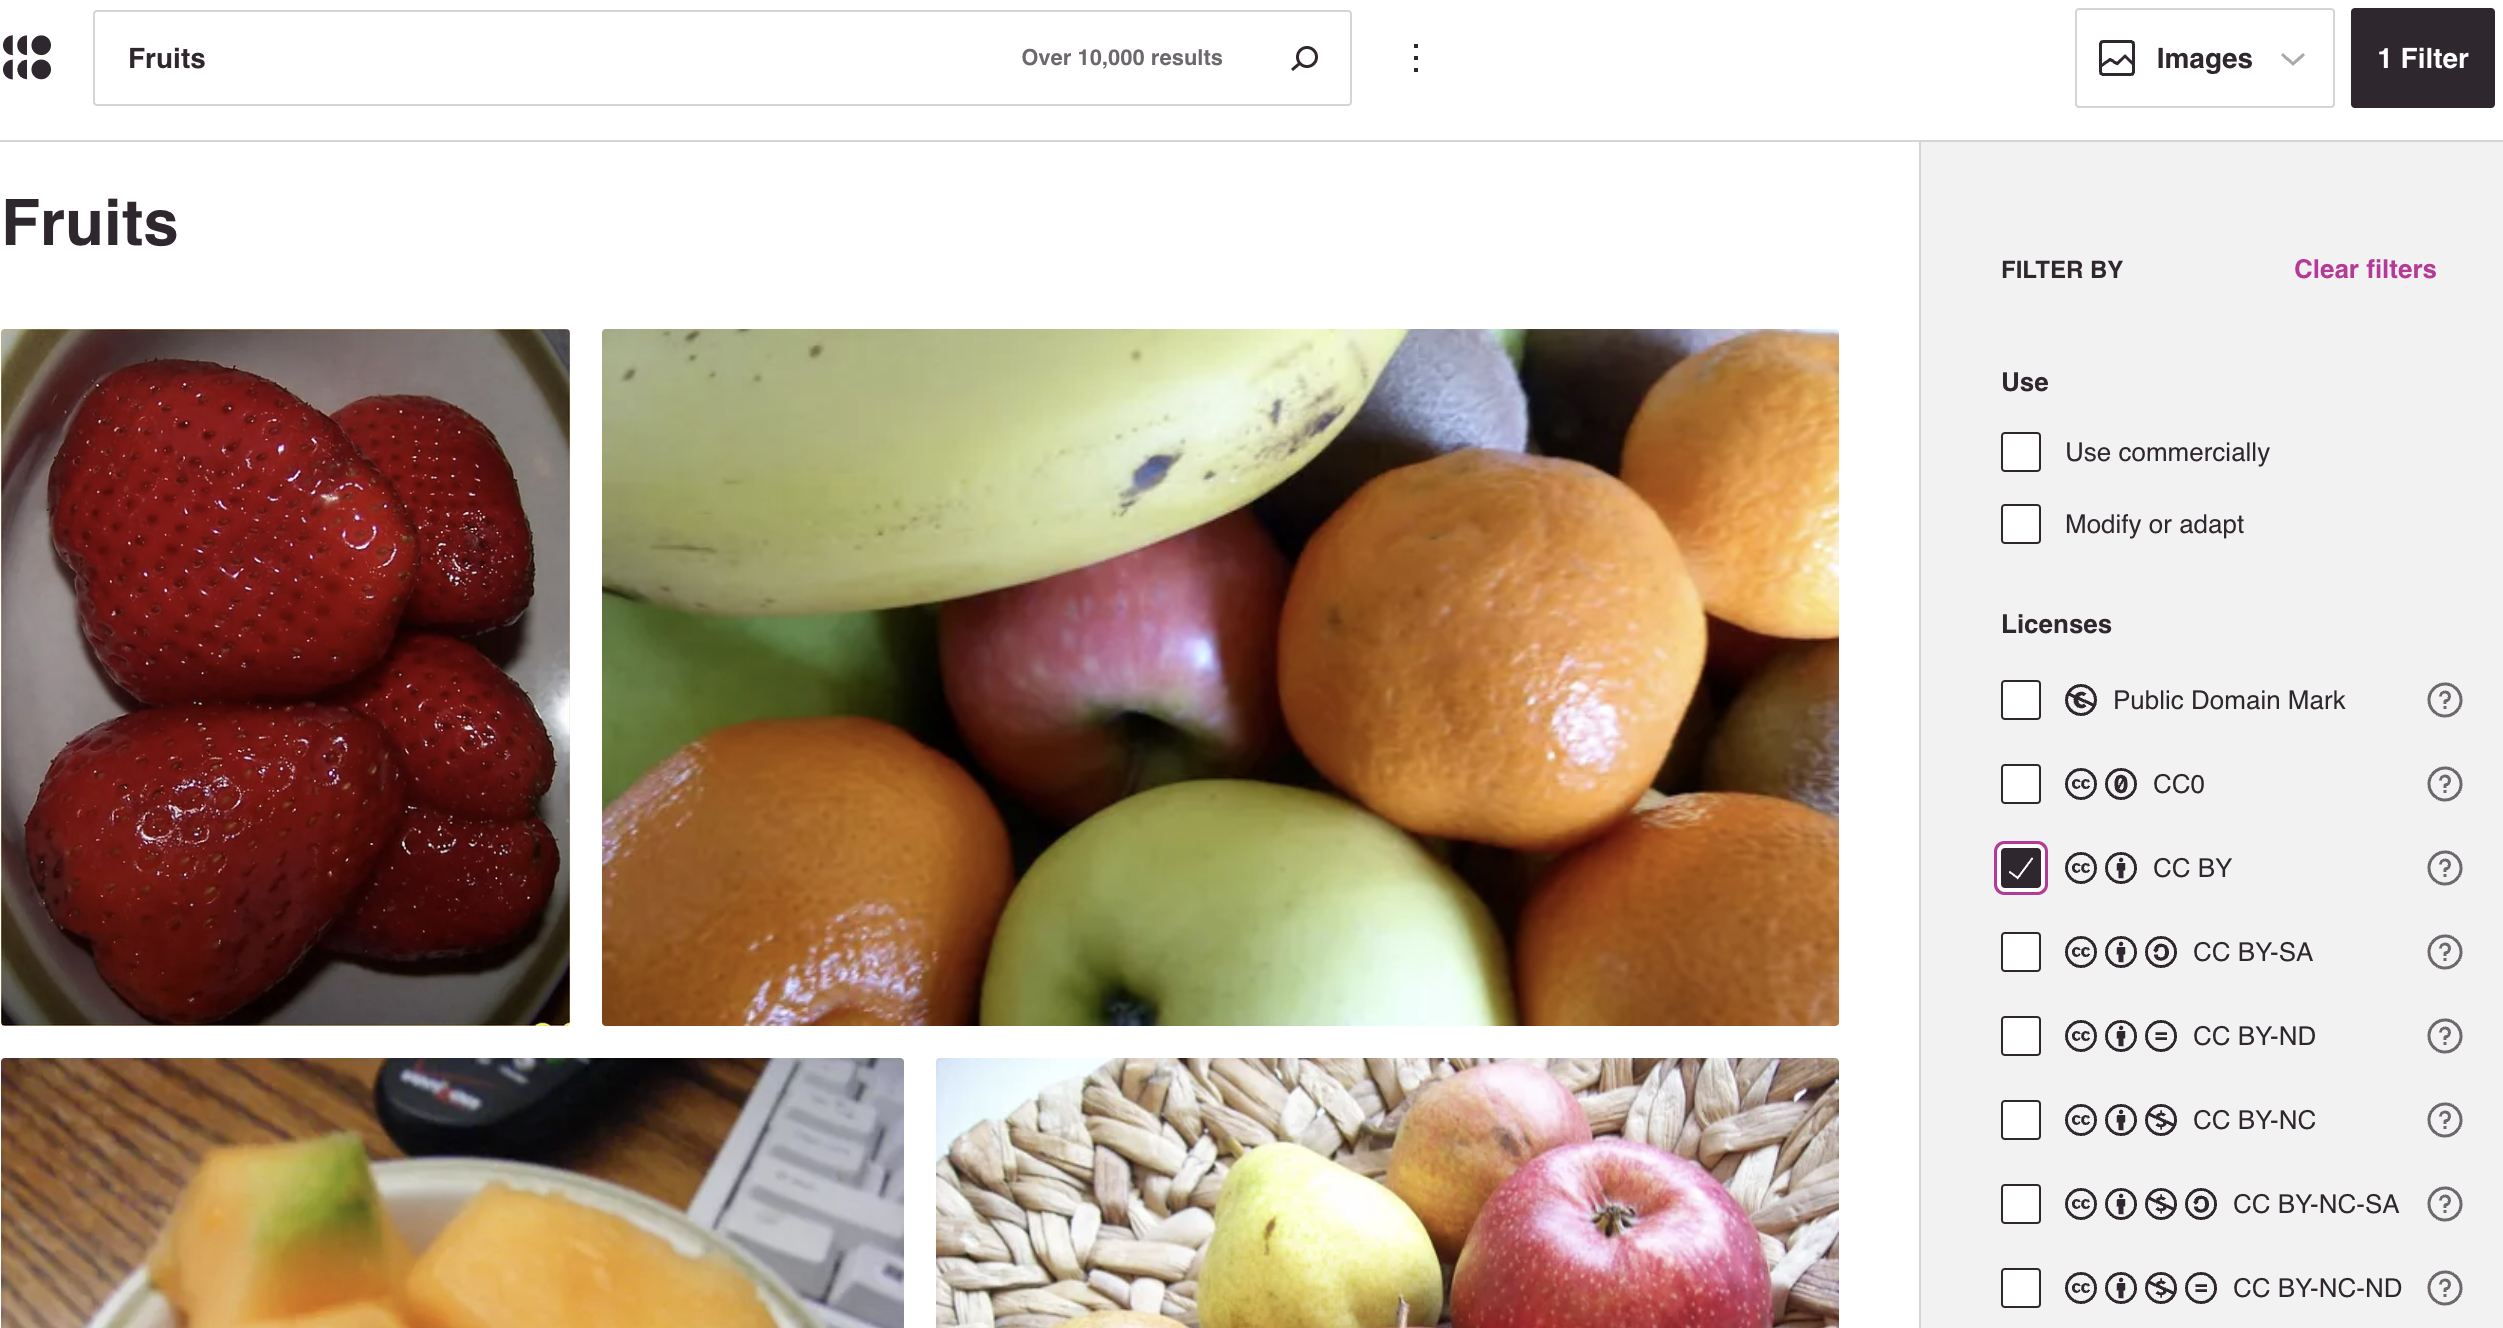 Printscreen der Bildersuche Openverse nach einer Suche nach dem Stichwort "Fruits" und der Lizenz-Einschränkung auf CC-BY-Bilder.